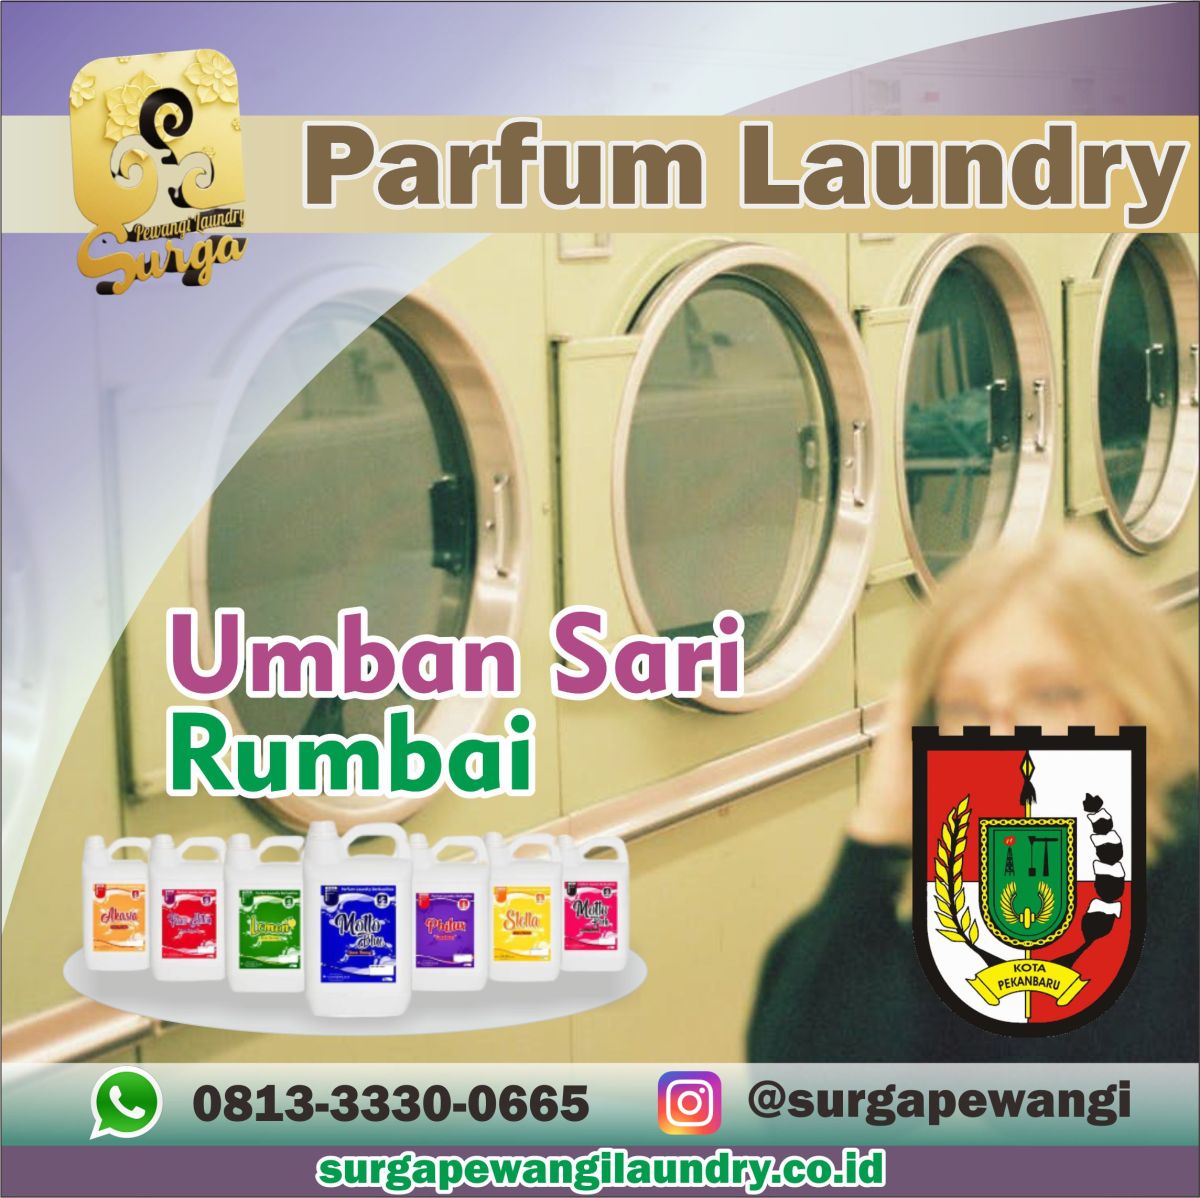 Parfum Laundry Umban Sari, Rumbai